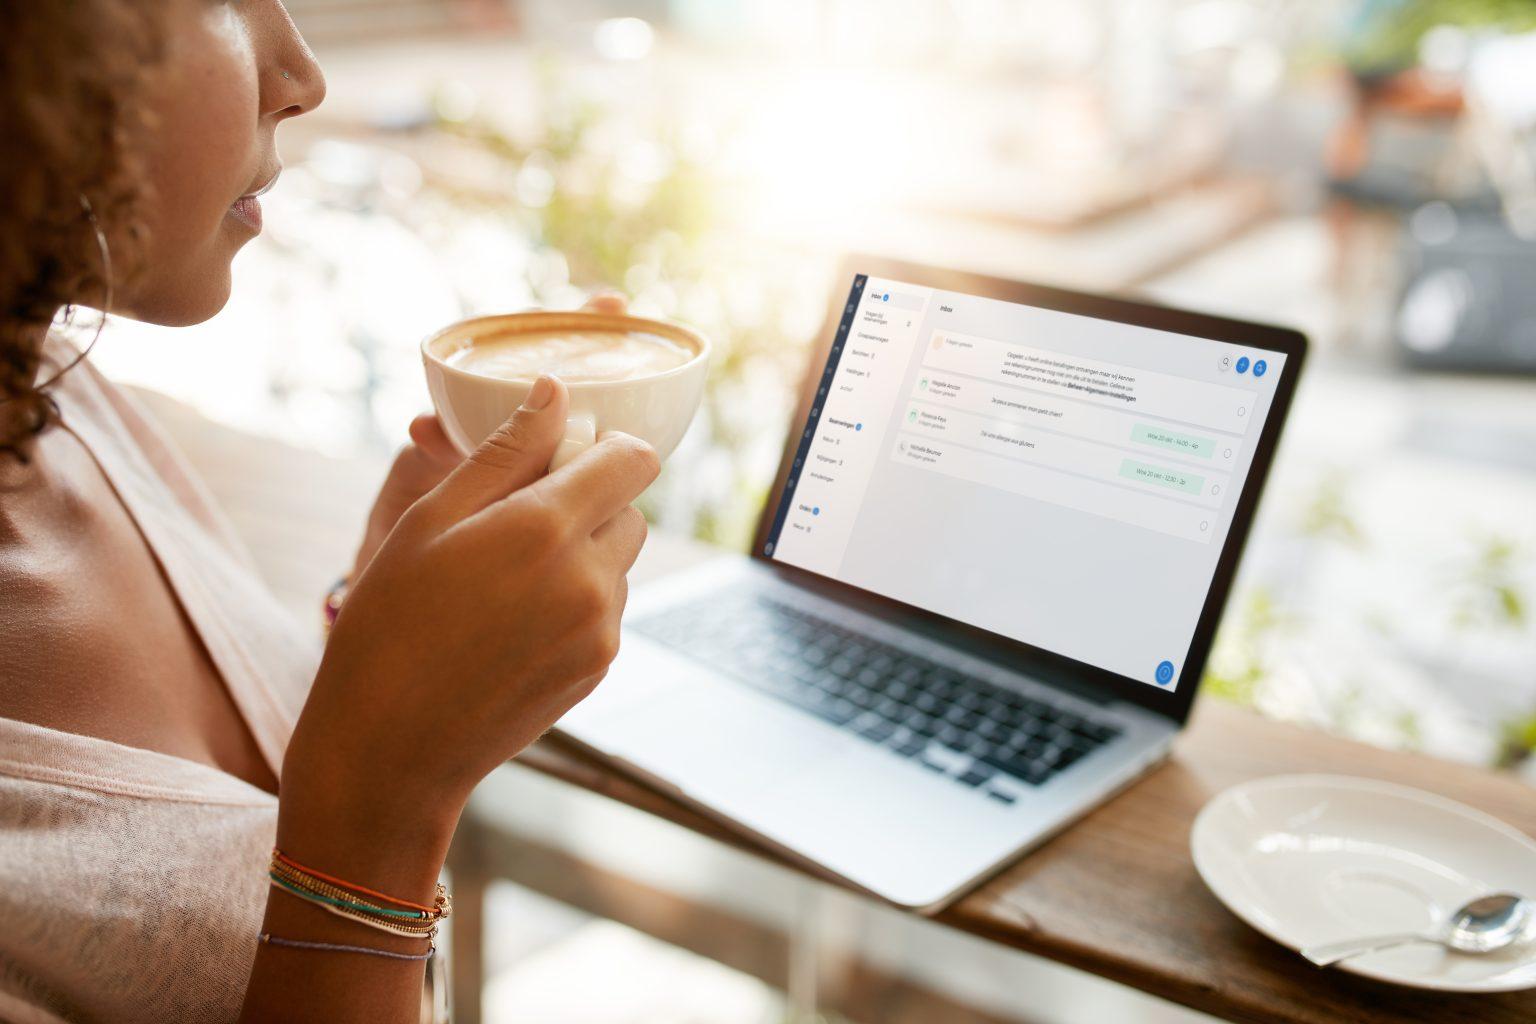 Resengo beheer je inbox - een dame met koffie bekijkt haar inbox op haar laptop.